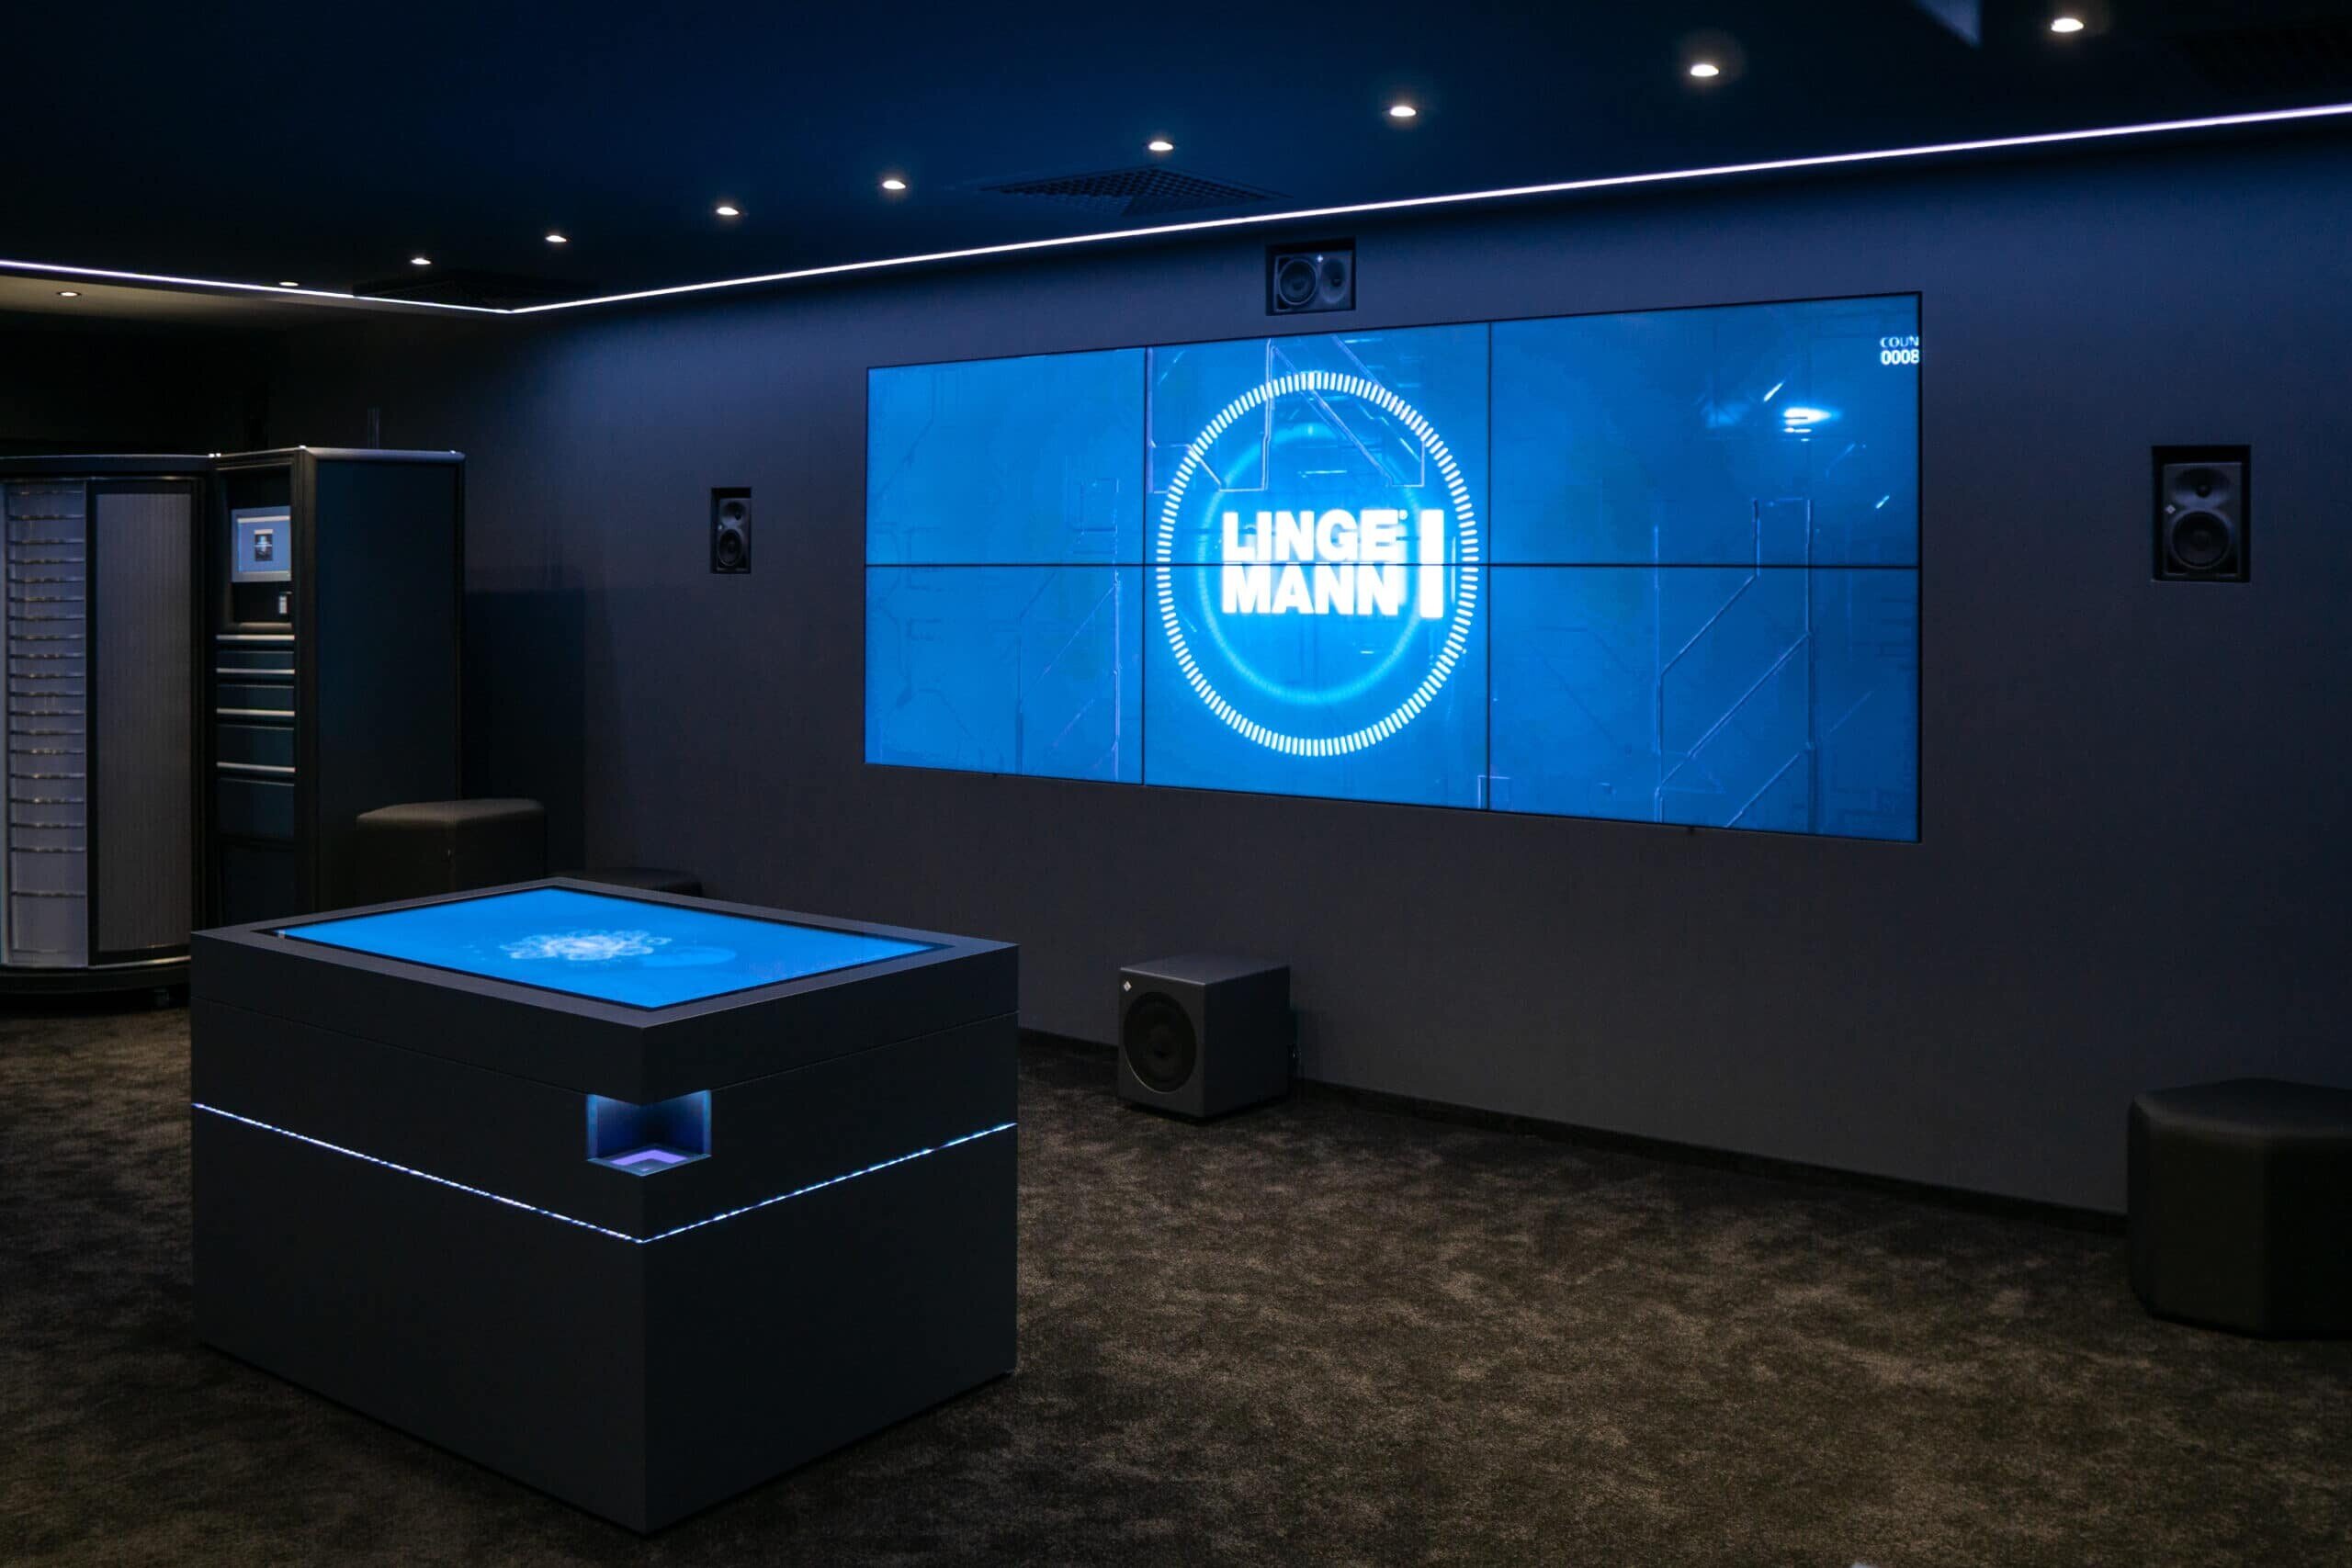 Lingemann Showroom mit Bildschirmwand und interaktivem Tisch zur Produktpräsentation